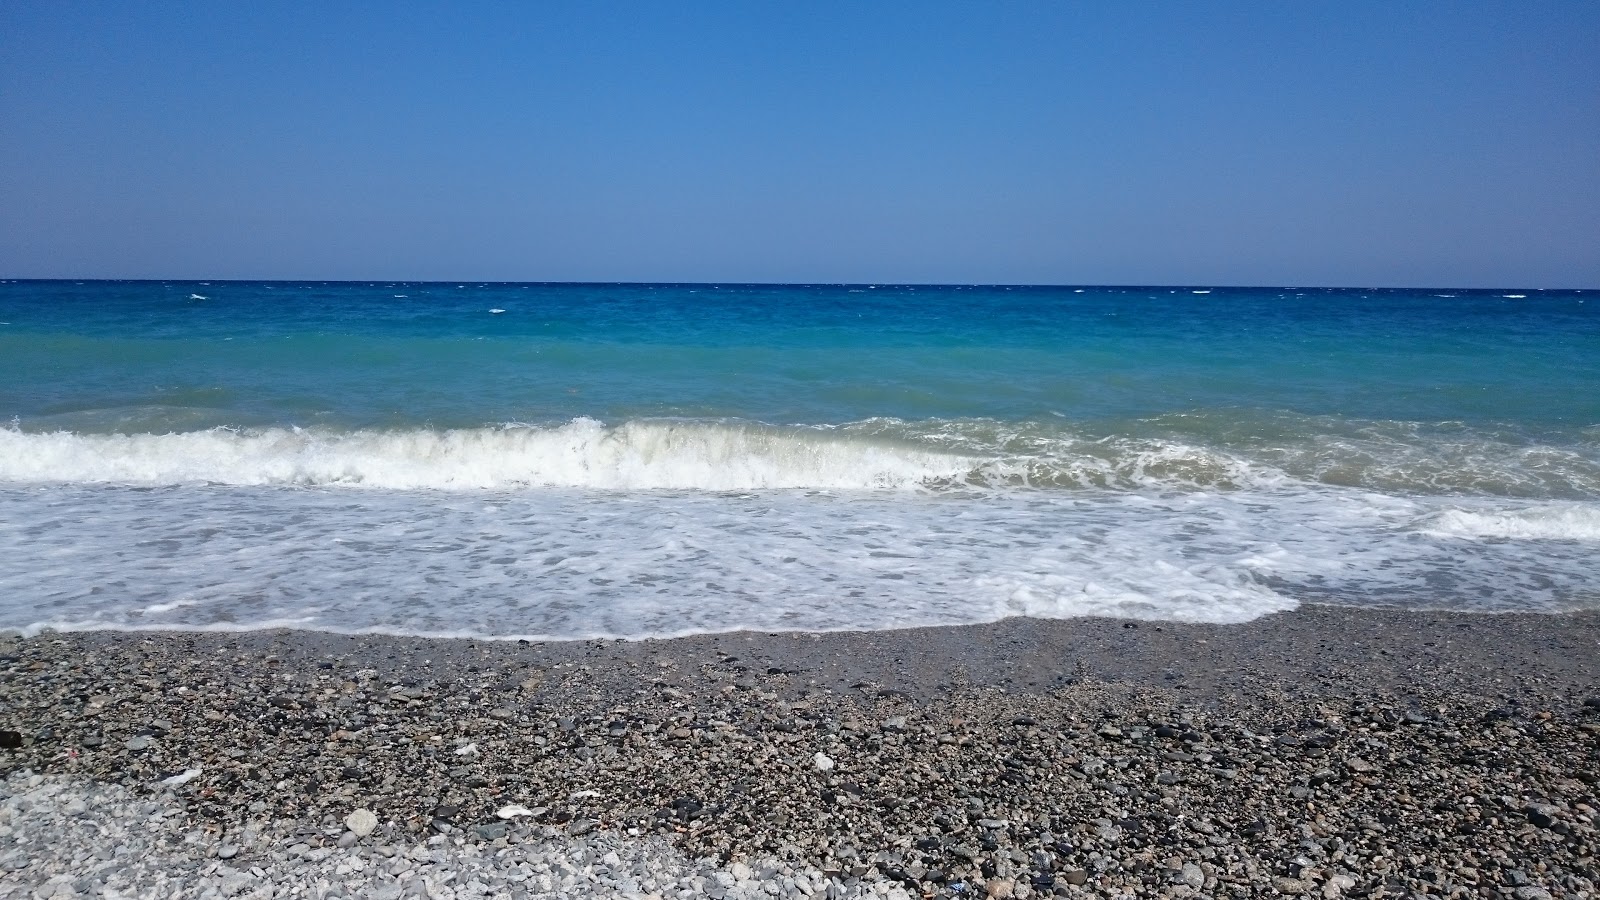 Fotografie cu Campomarzio beach zonele de facilități